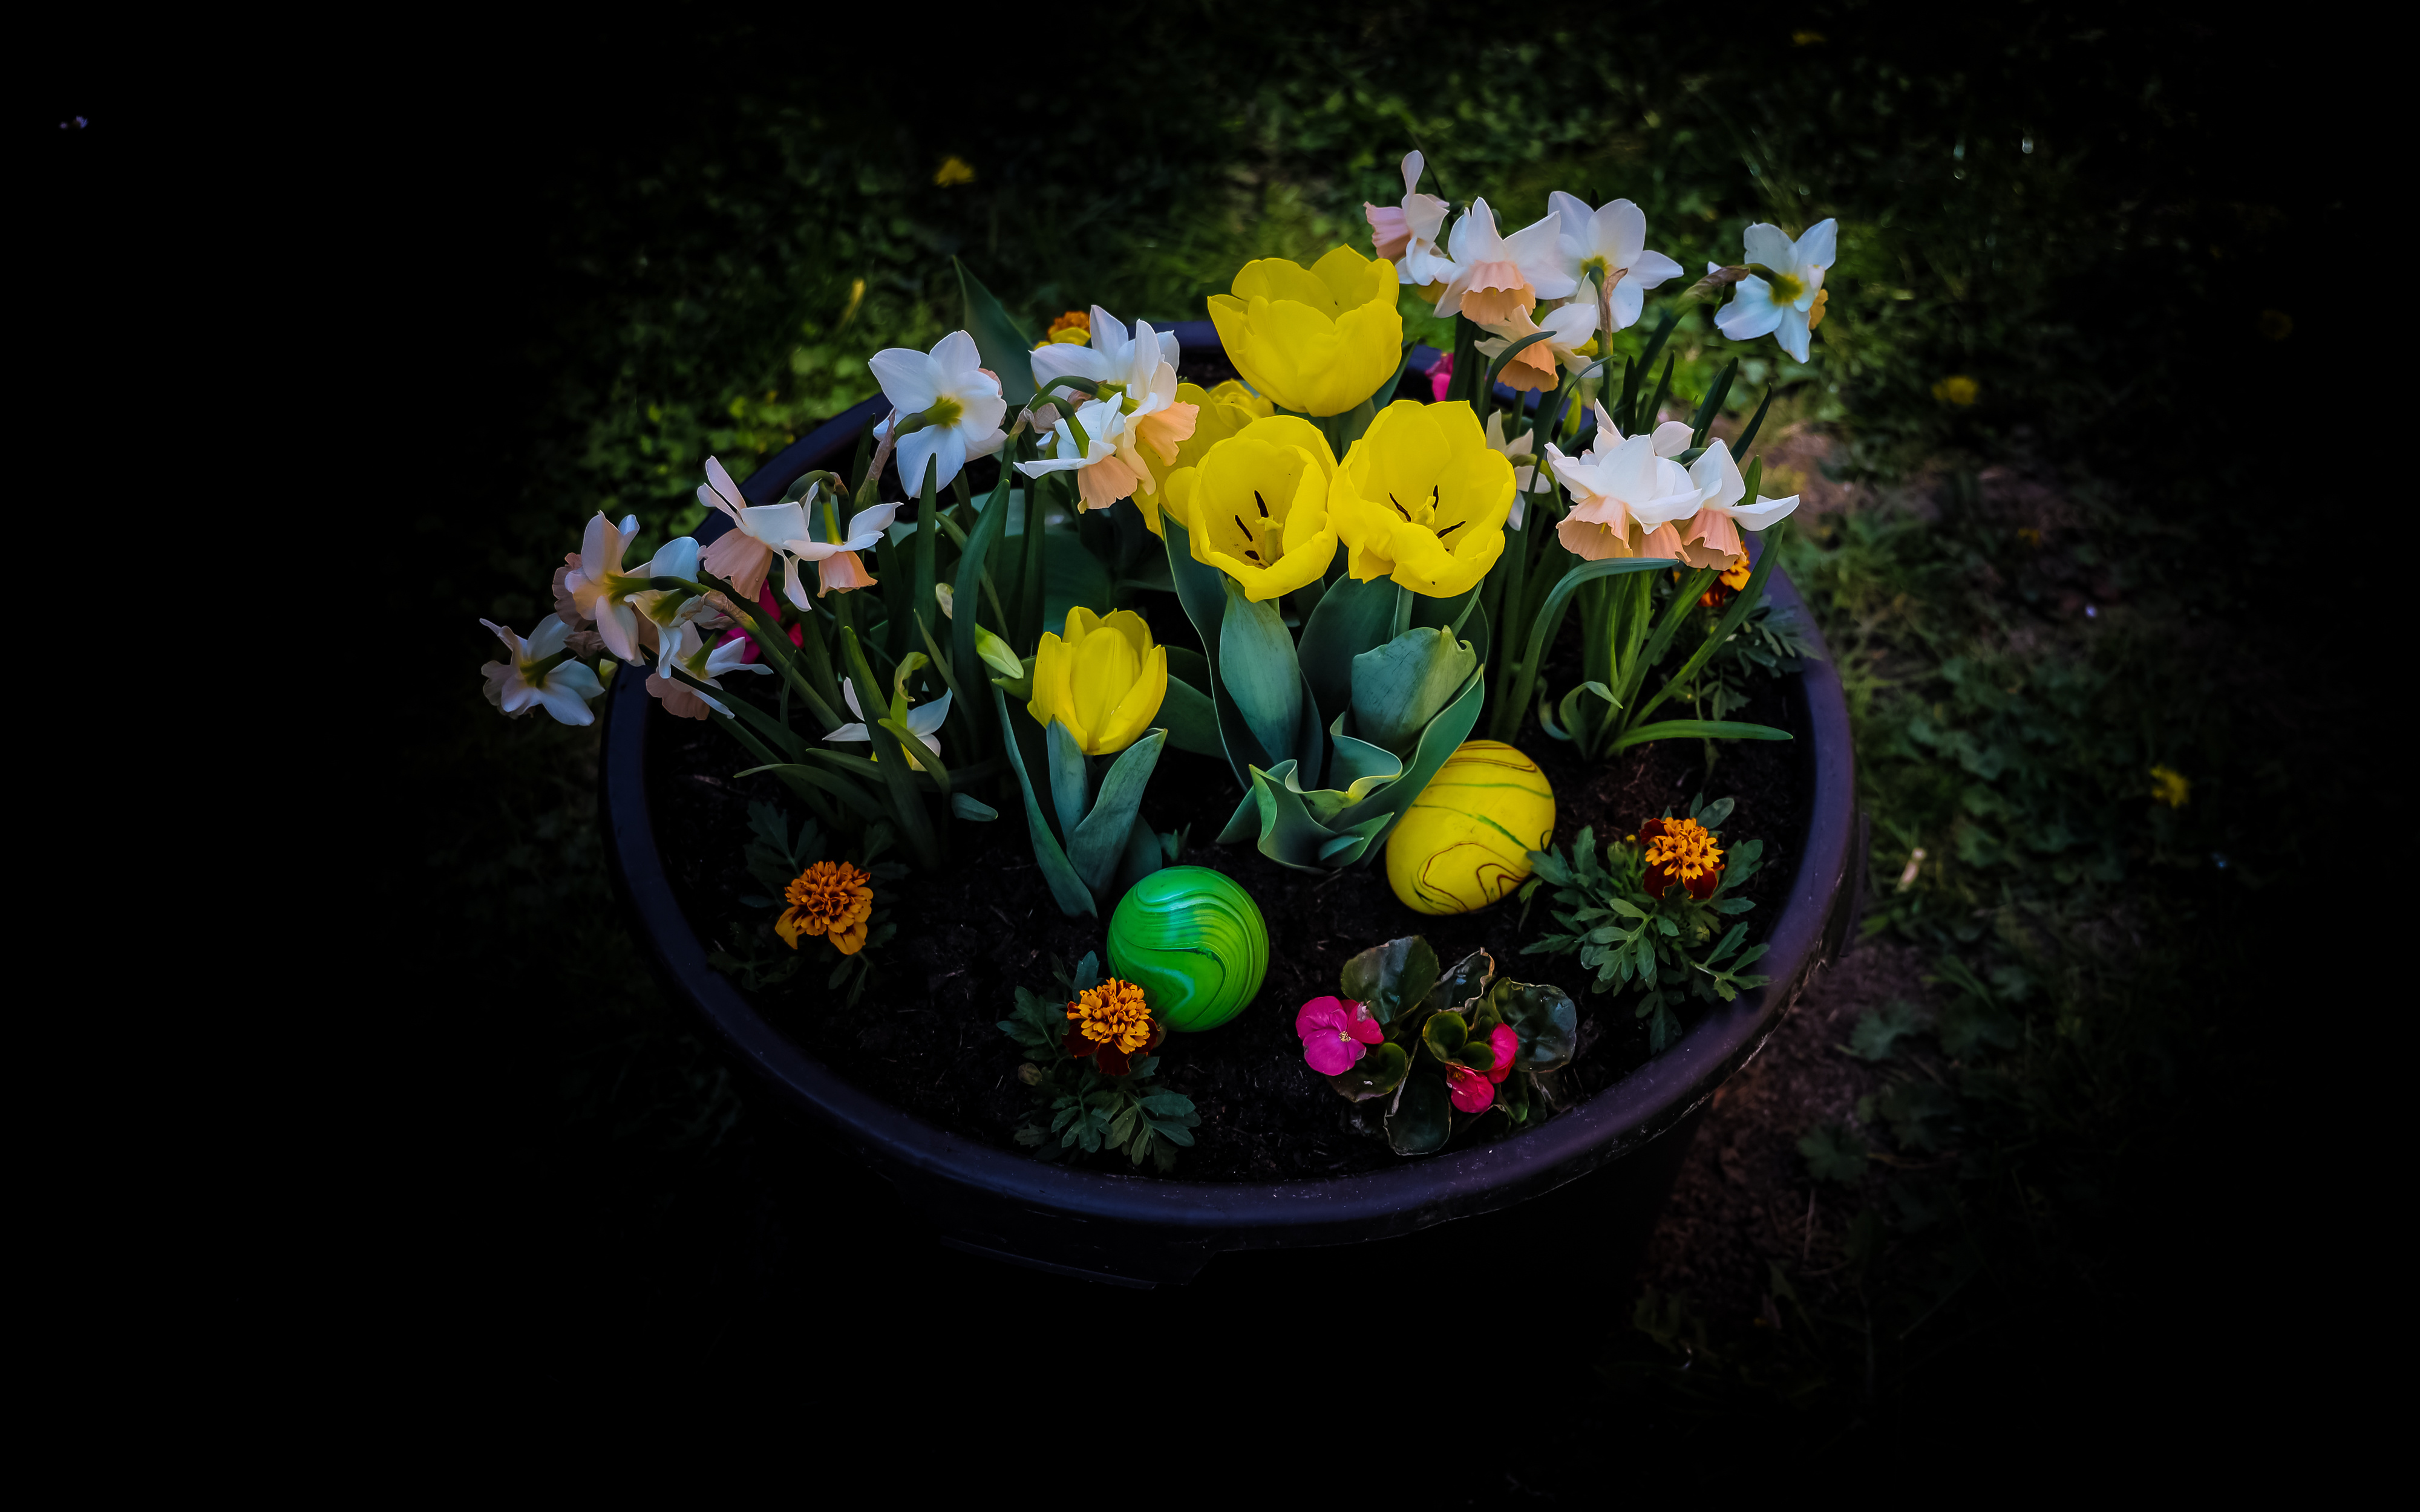 Фото цветок пасха яйцо - бесплатные картинки на Fonwall